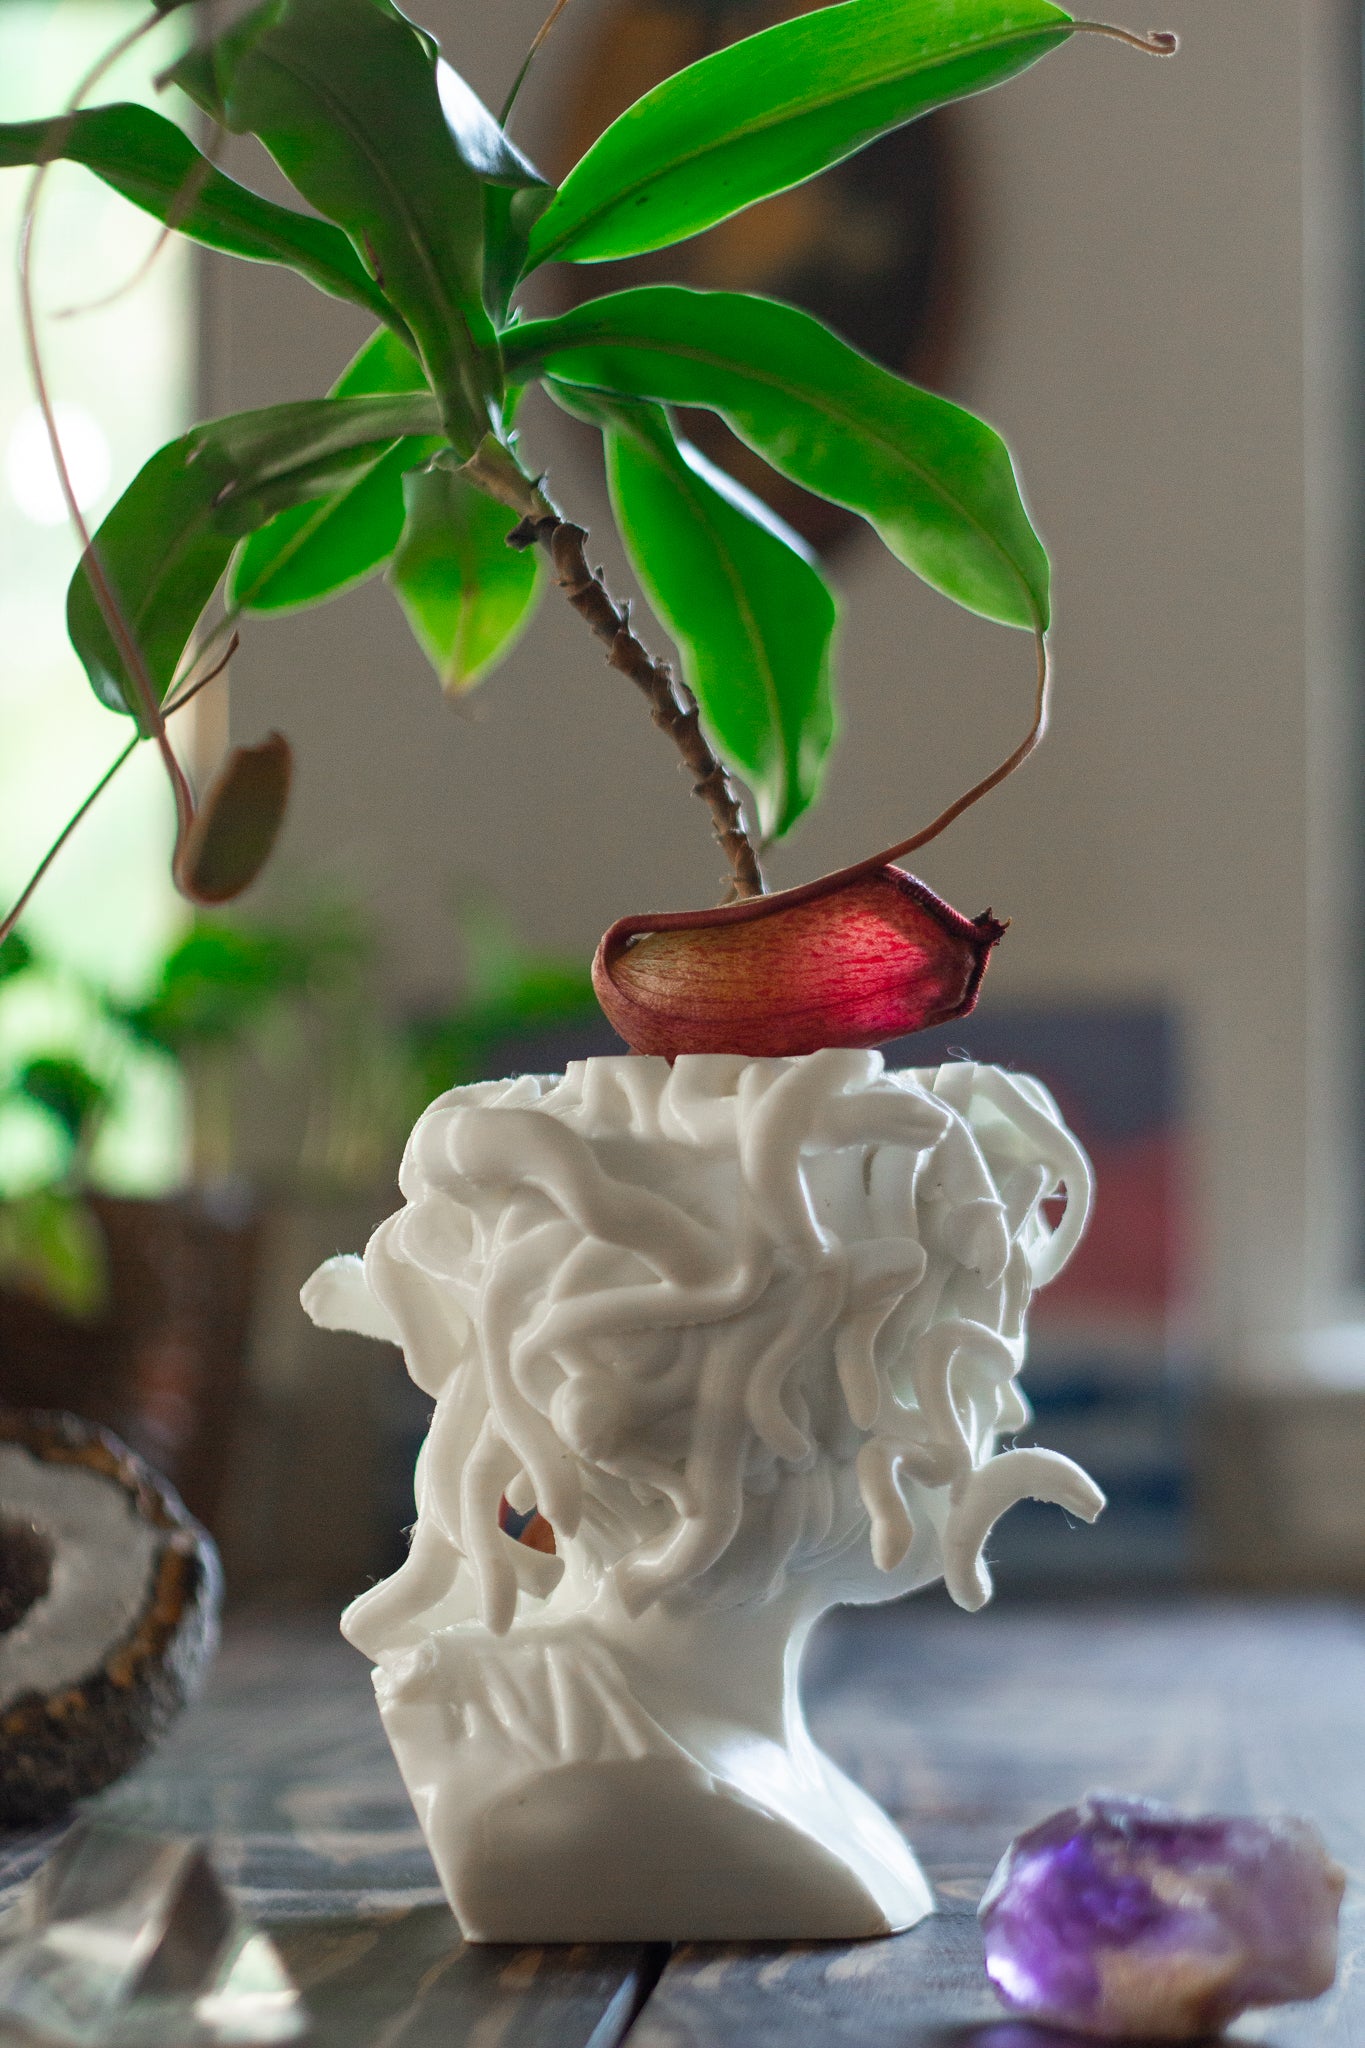 Bubble Plant Pot, 3D Printed Planter, Vintage Siena Planter With